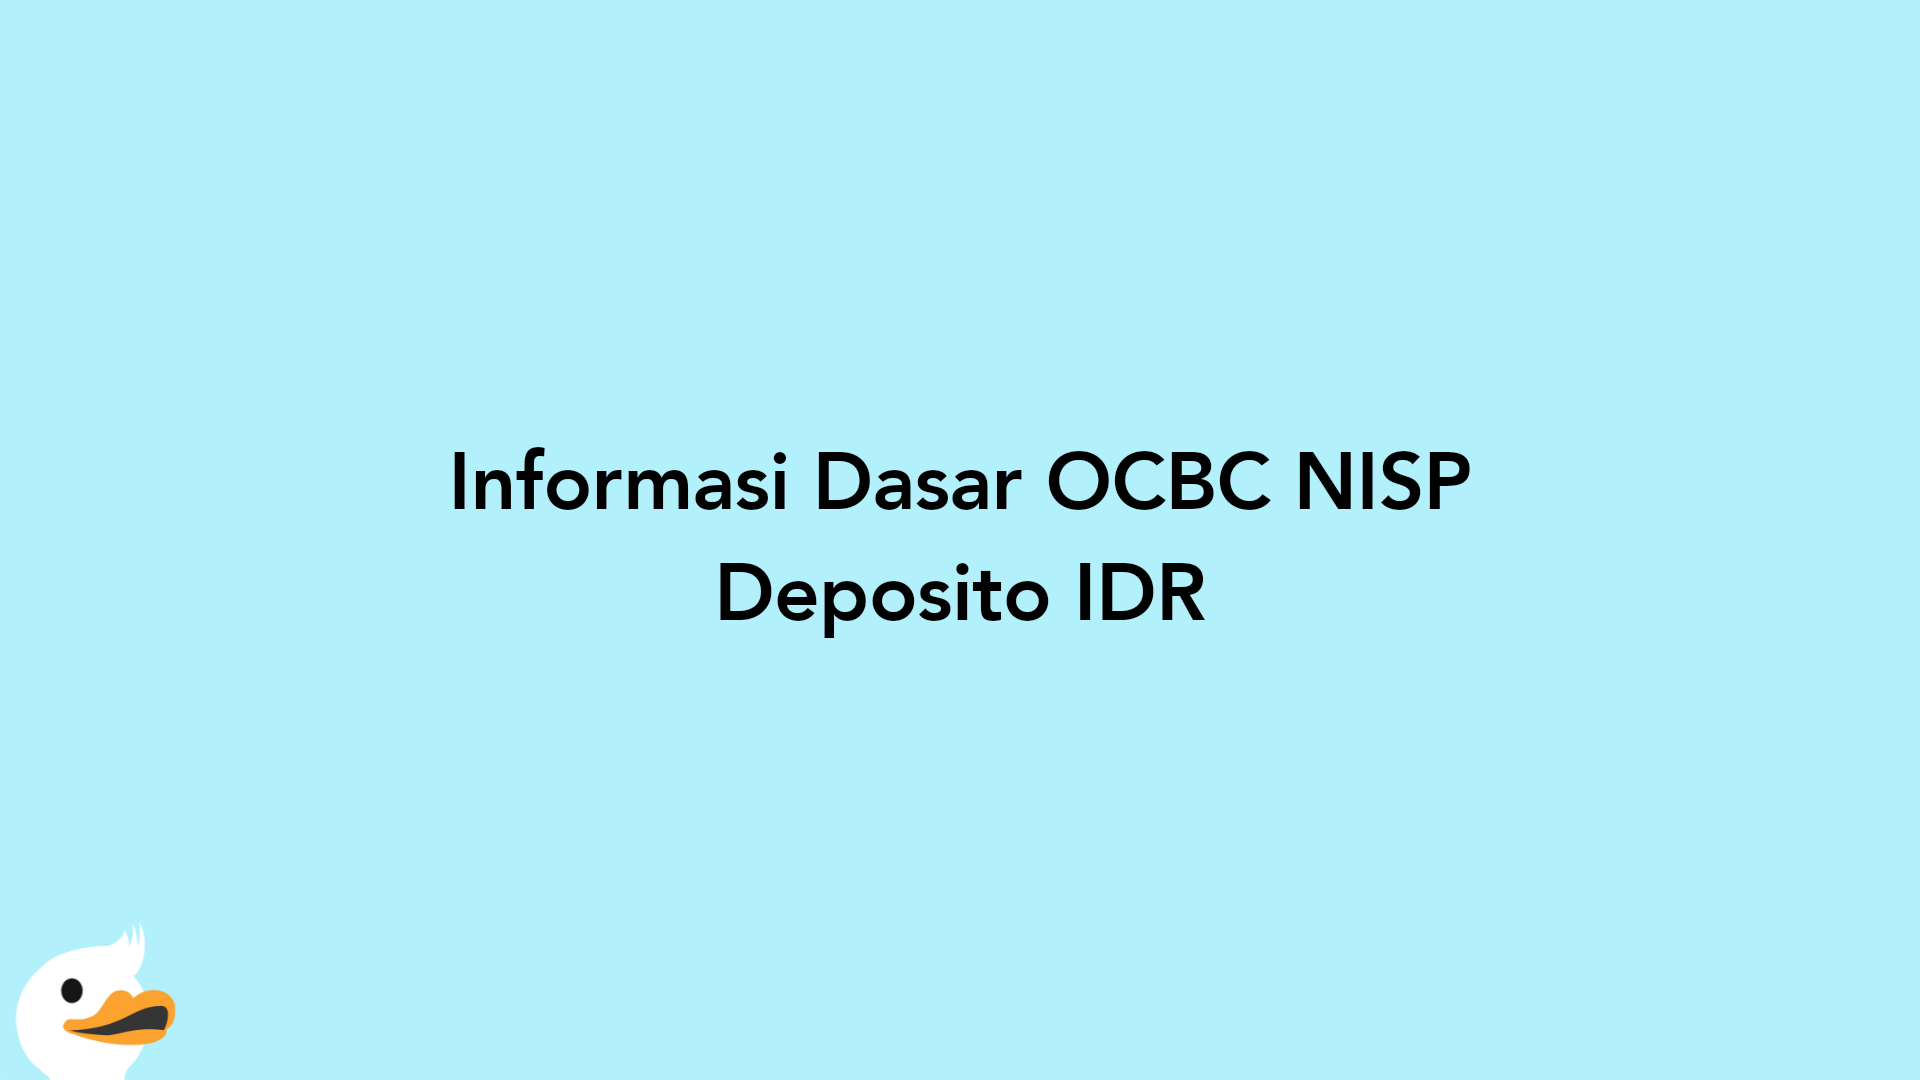 Informasi Dasar OCBC NISP Deposito IDR